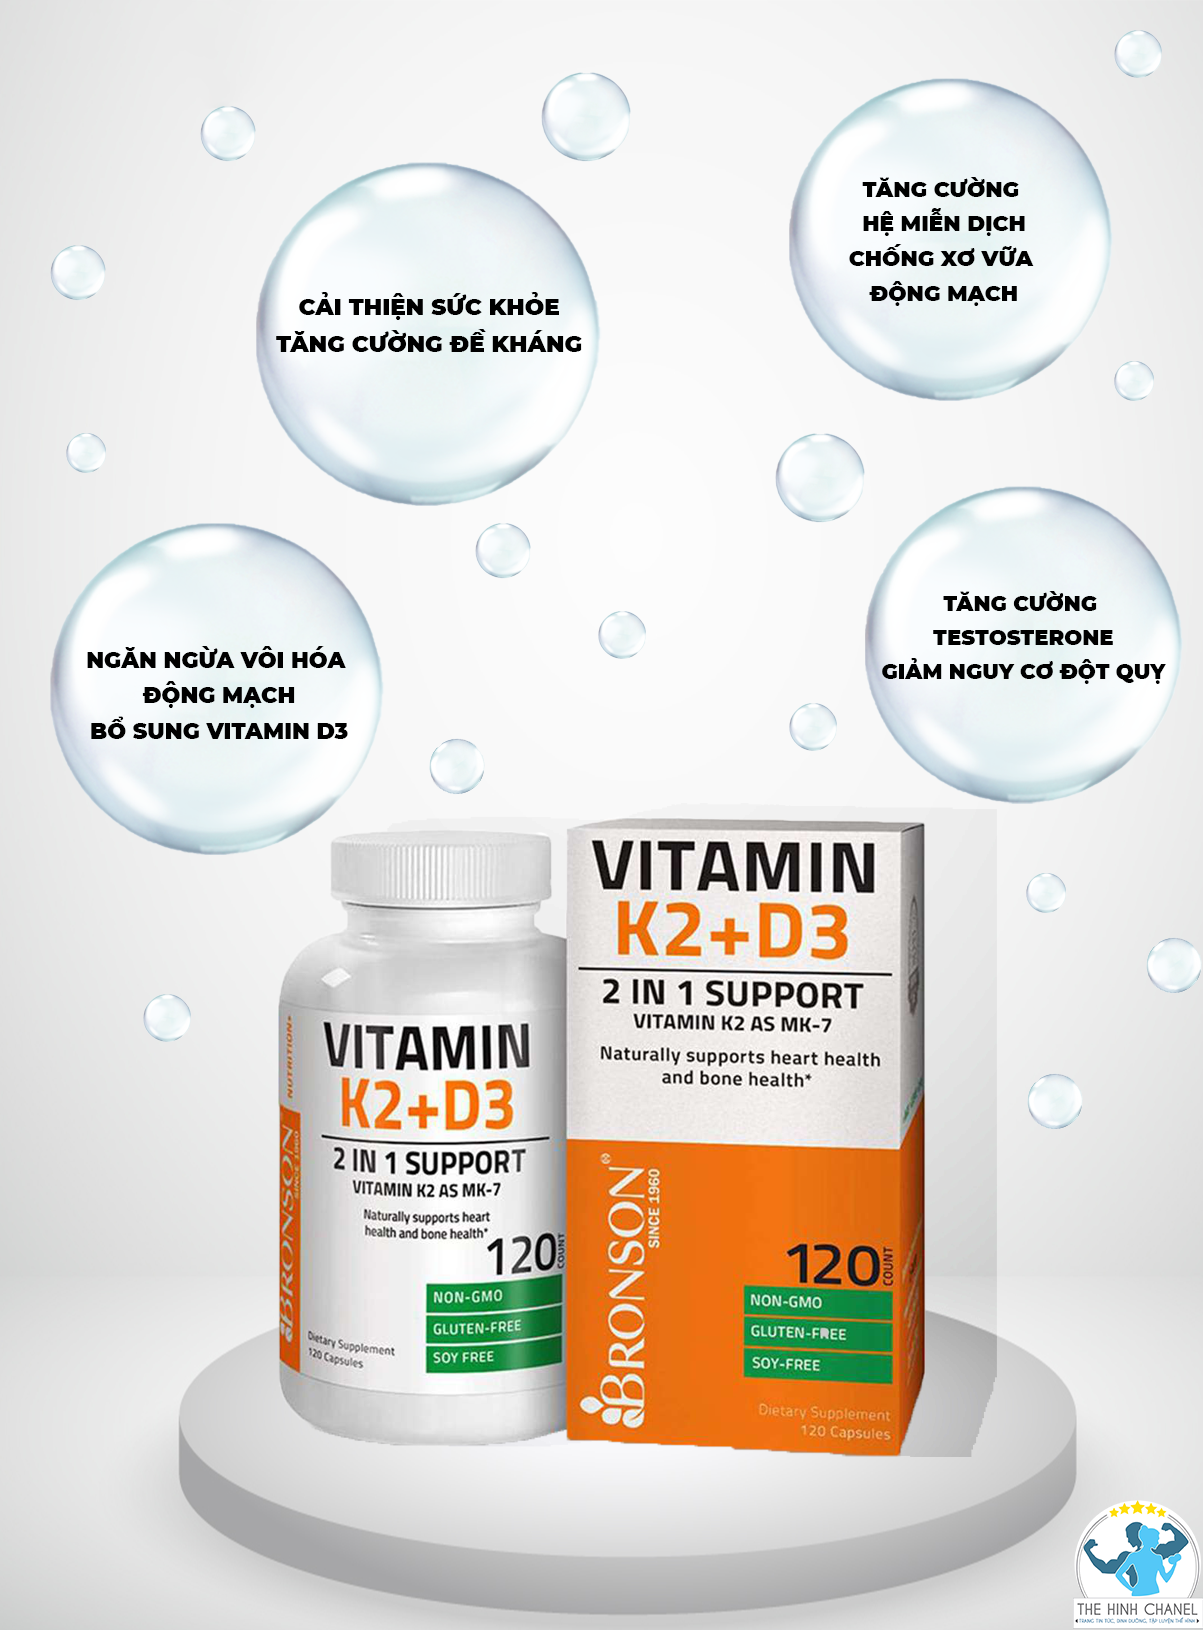 Vitamine D3 K2 Supplement có lợi ích gì ? Nội dung bài viết dưới đây của Thể Hình Chanel sẽ giúp bạn hiểu rõ hơn nhé